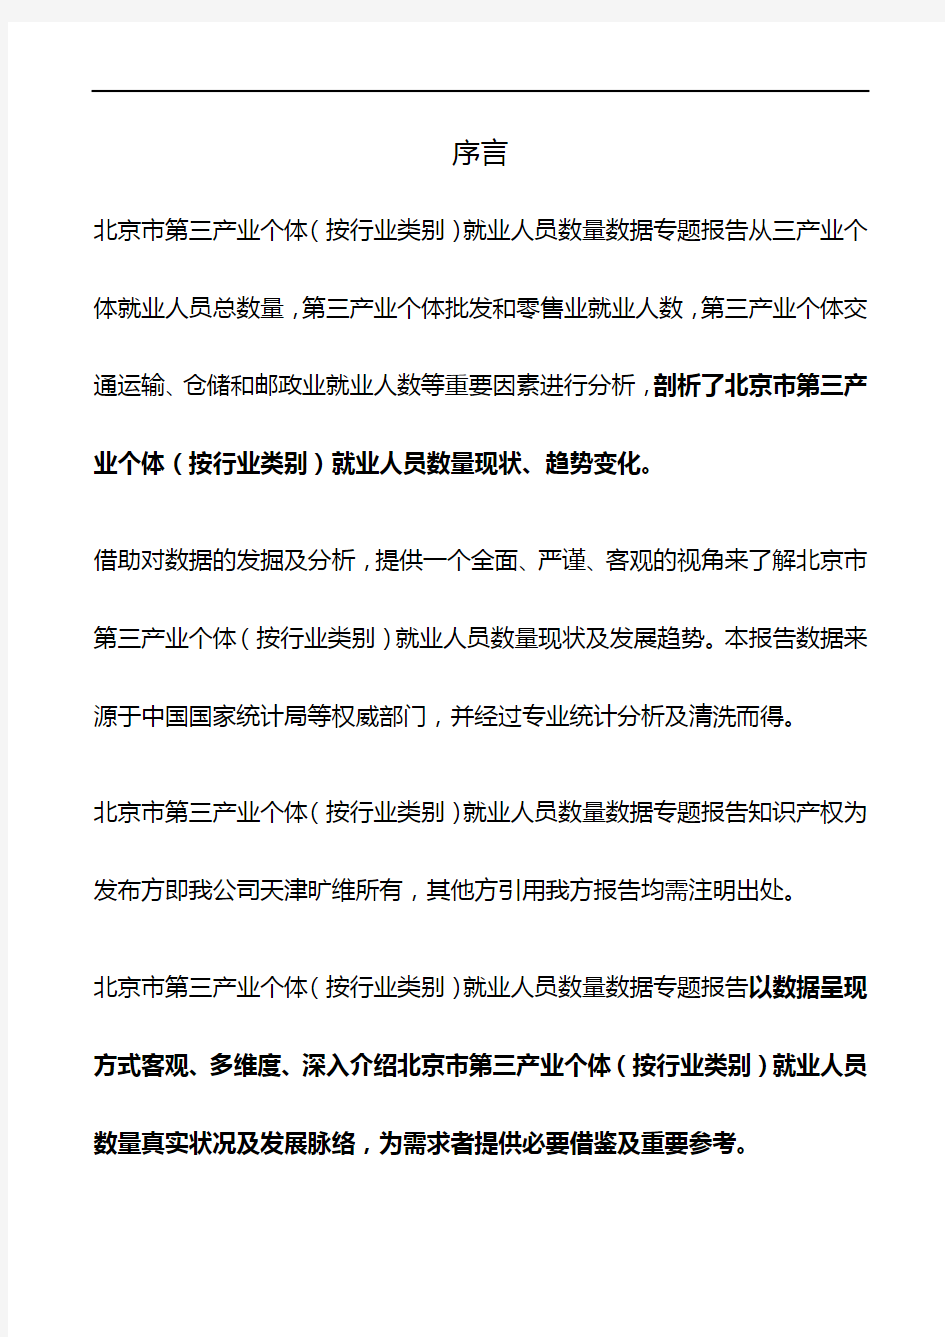 北京市第三产业个体(按行业类别)就业人员数量3年数据专题报告2019版